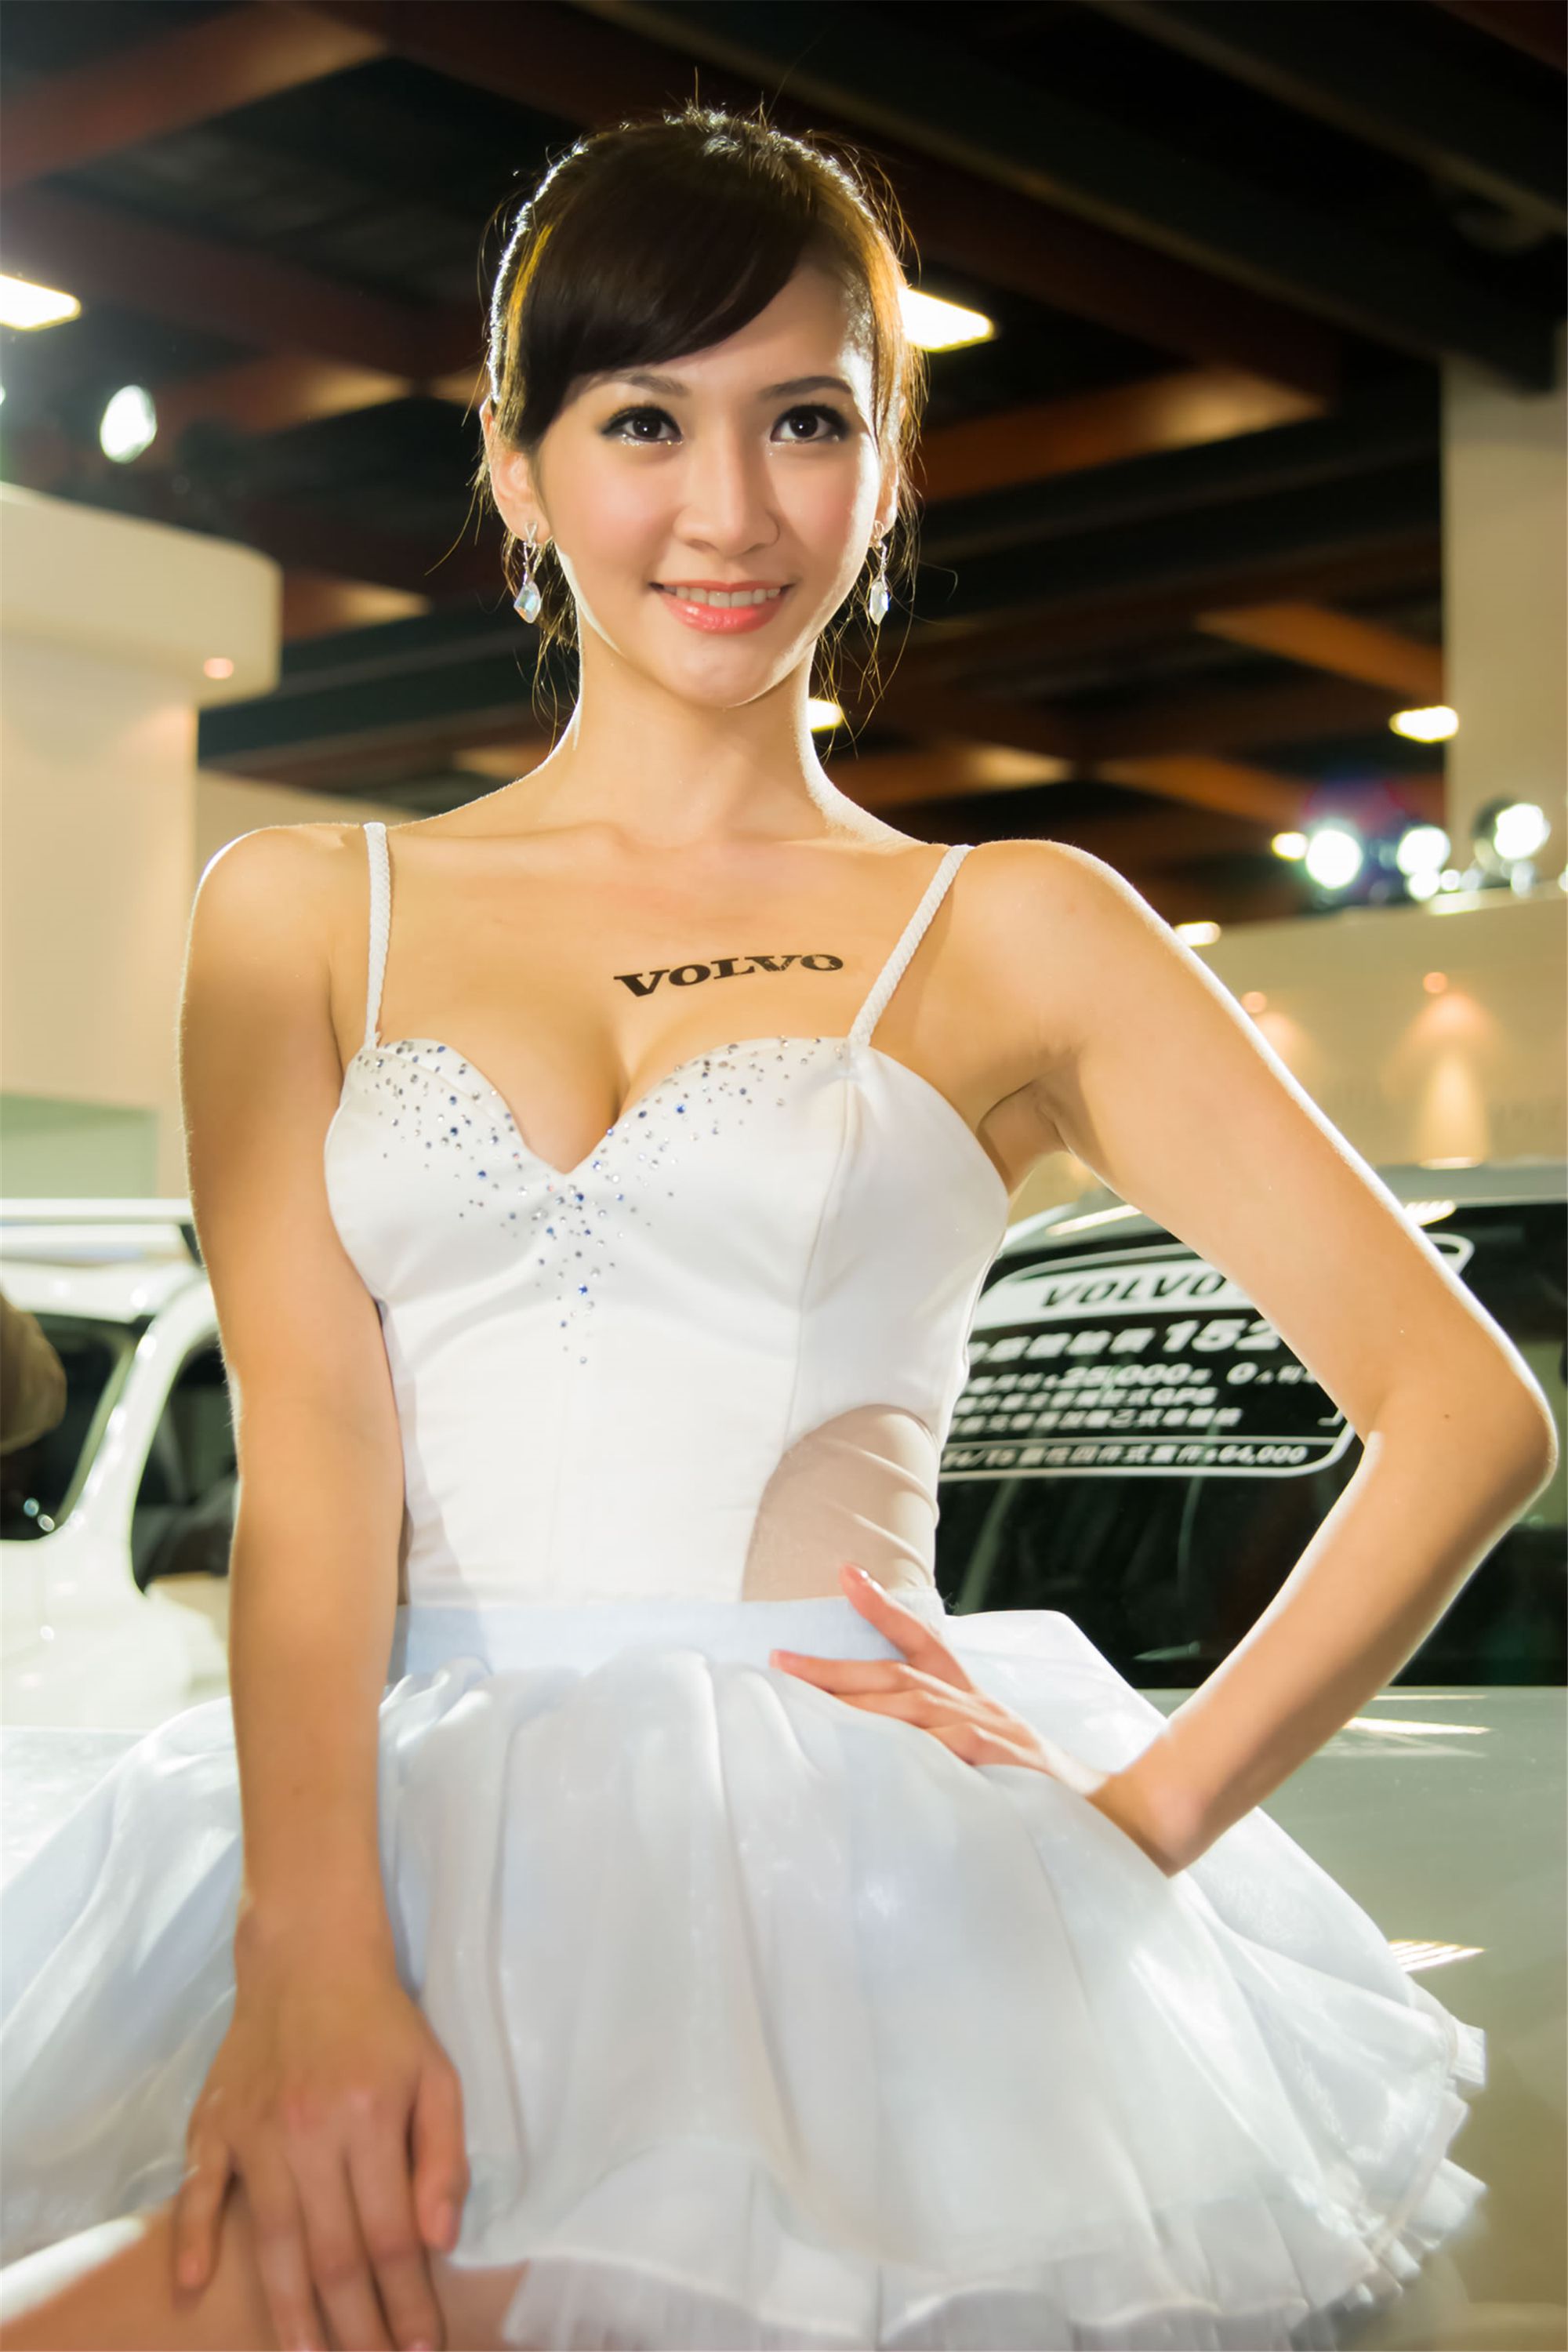 [展台美女] Mia魏靖軒 - 台北新车展沃尔沃Volvo展台套图